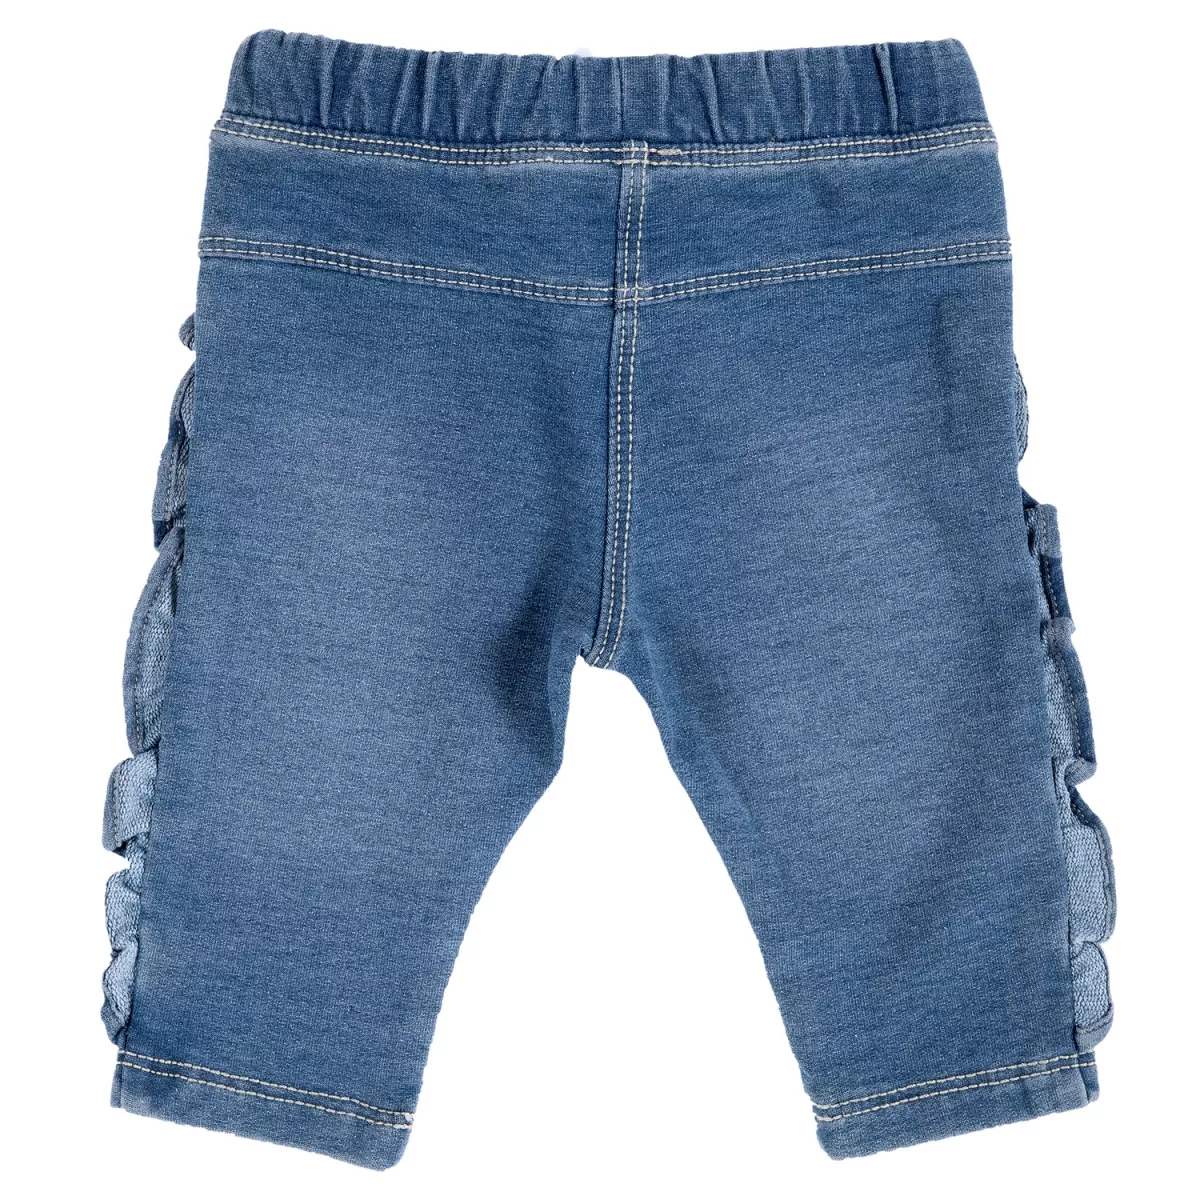 Pantalon copii Chicco, albastru deschis, 68